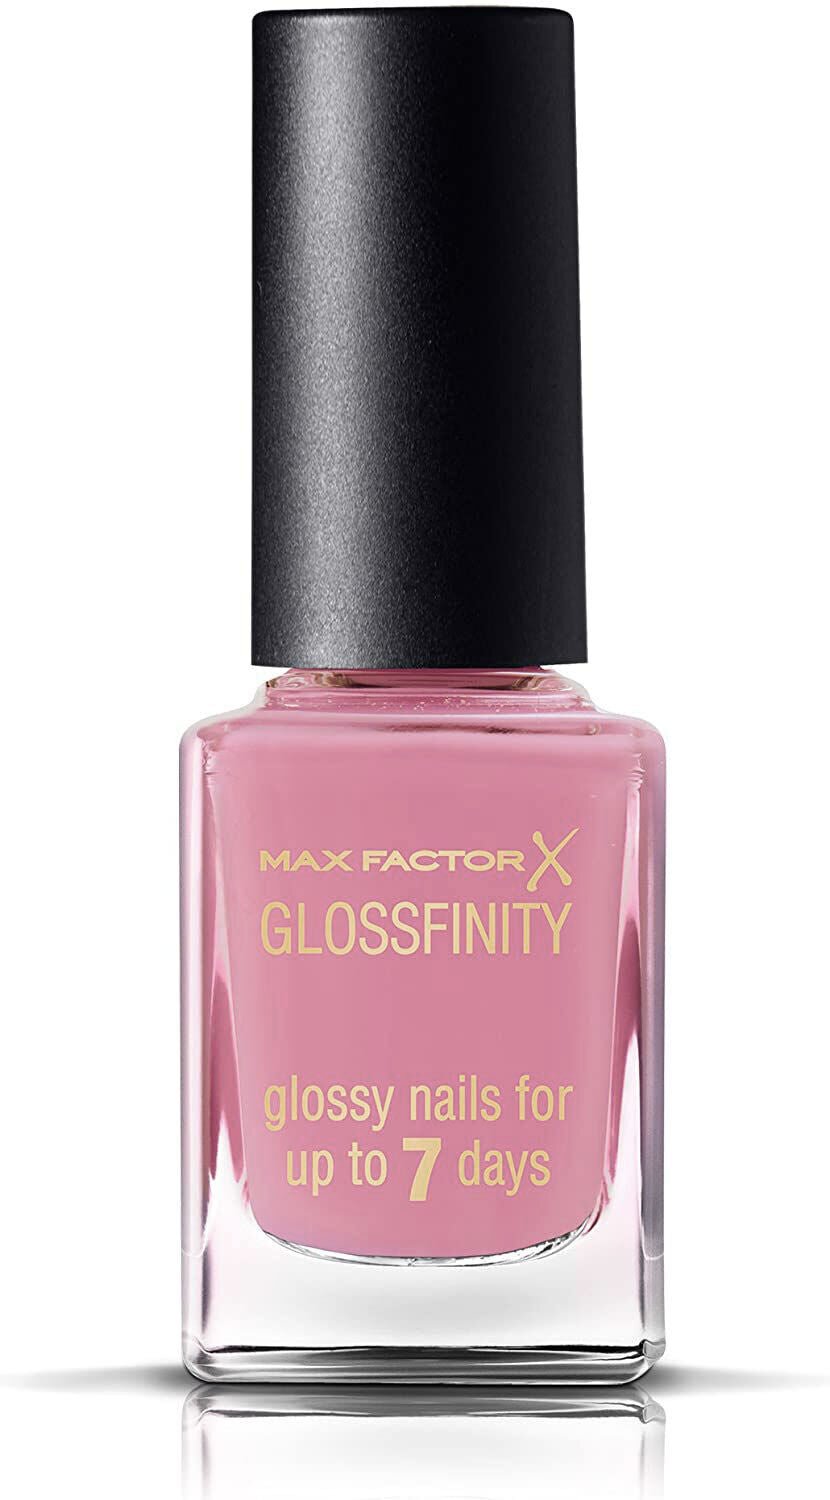 Max Factor Glossfinity Nail Polish 125 Marsh-Mallow - The Unicorn's Den